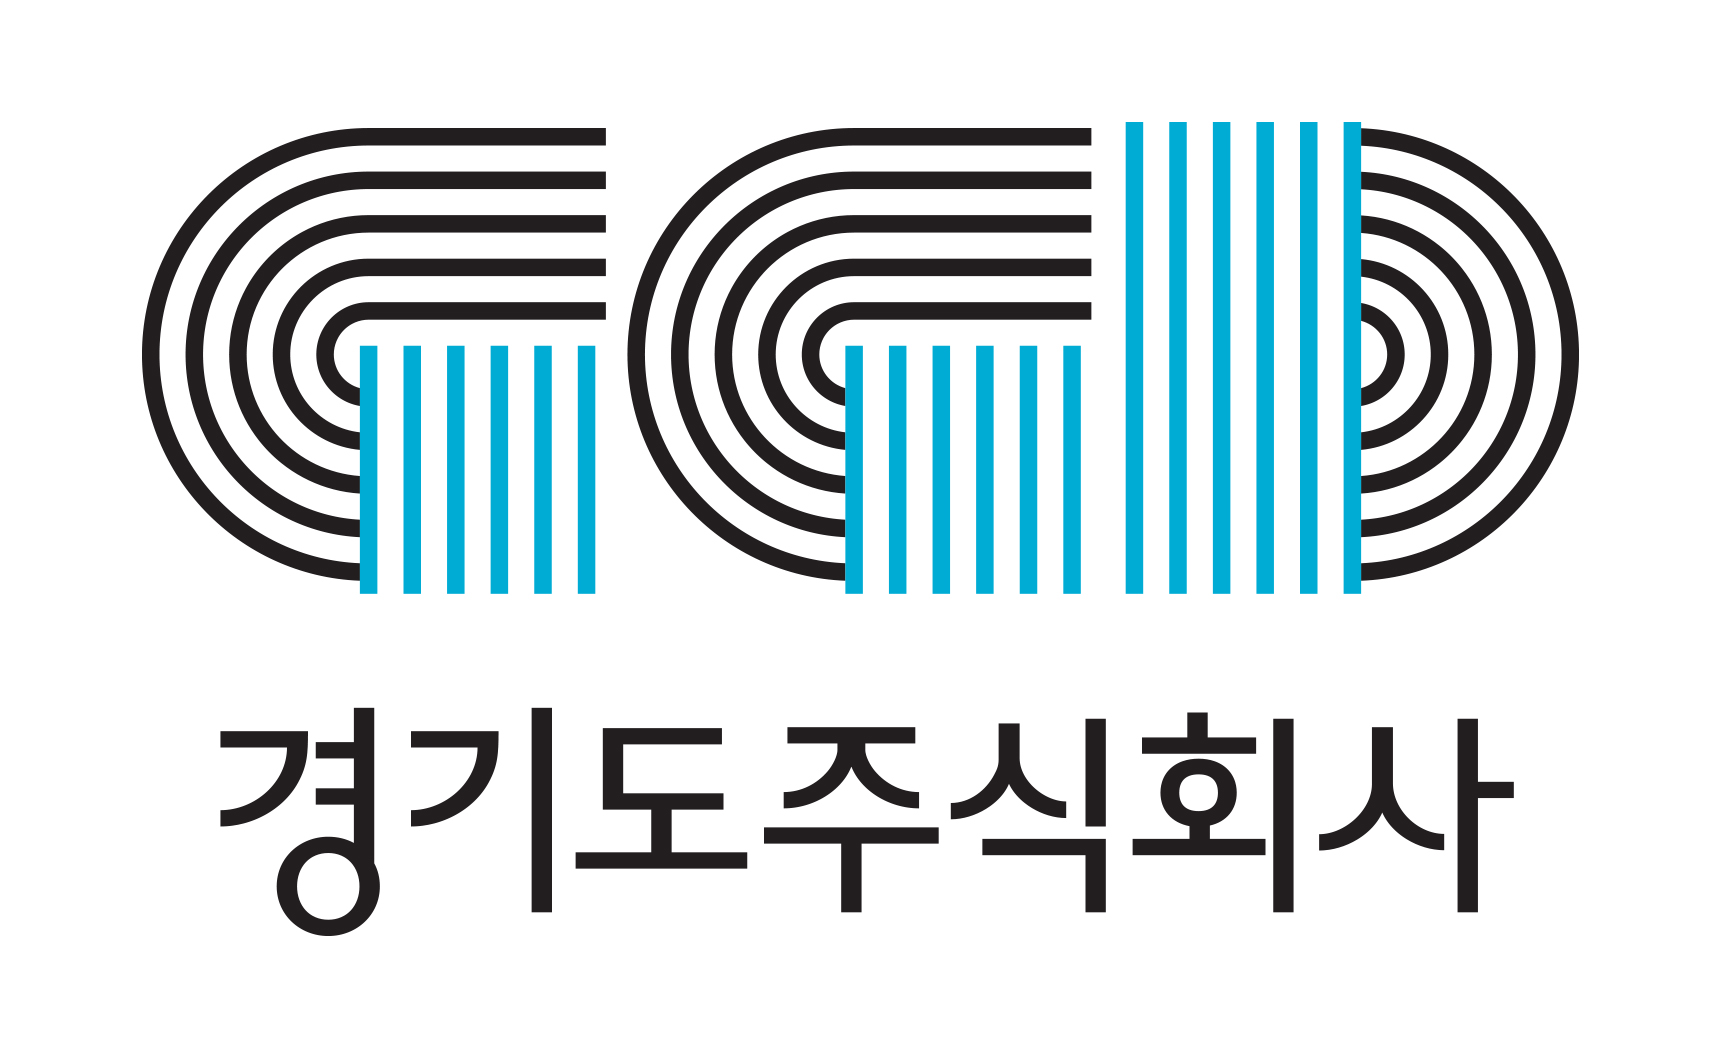 총 5837건 접수...`경기도 공공배달앱 네이밍 공모전` 폭발적 관심 